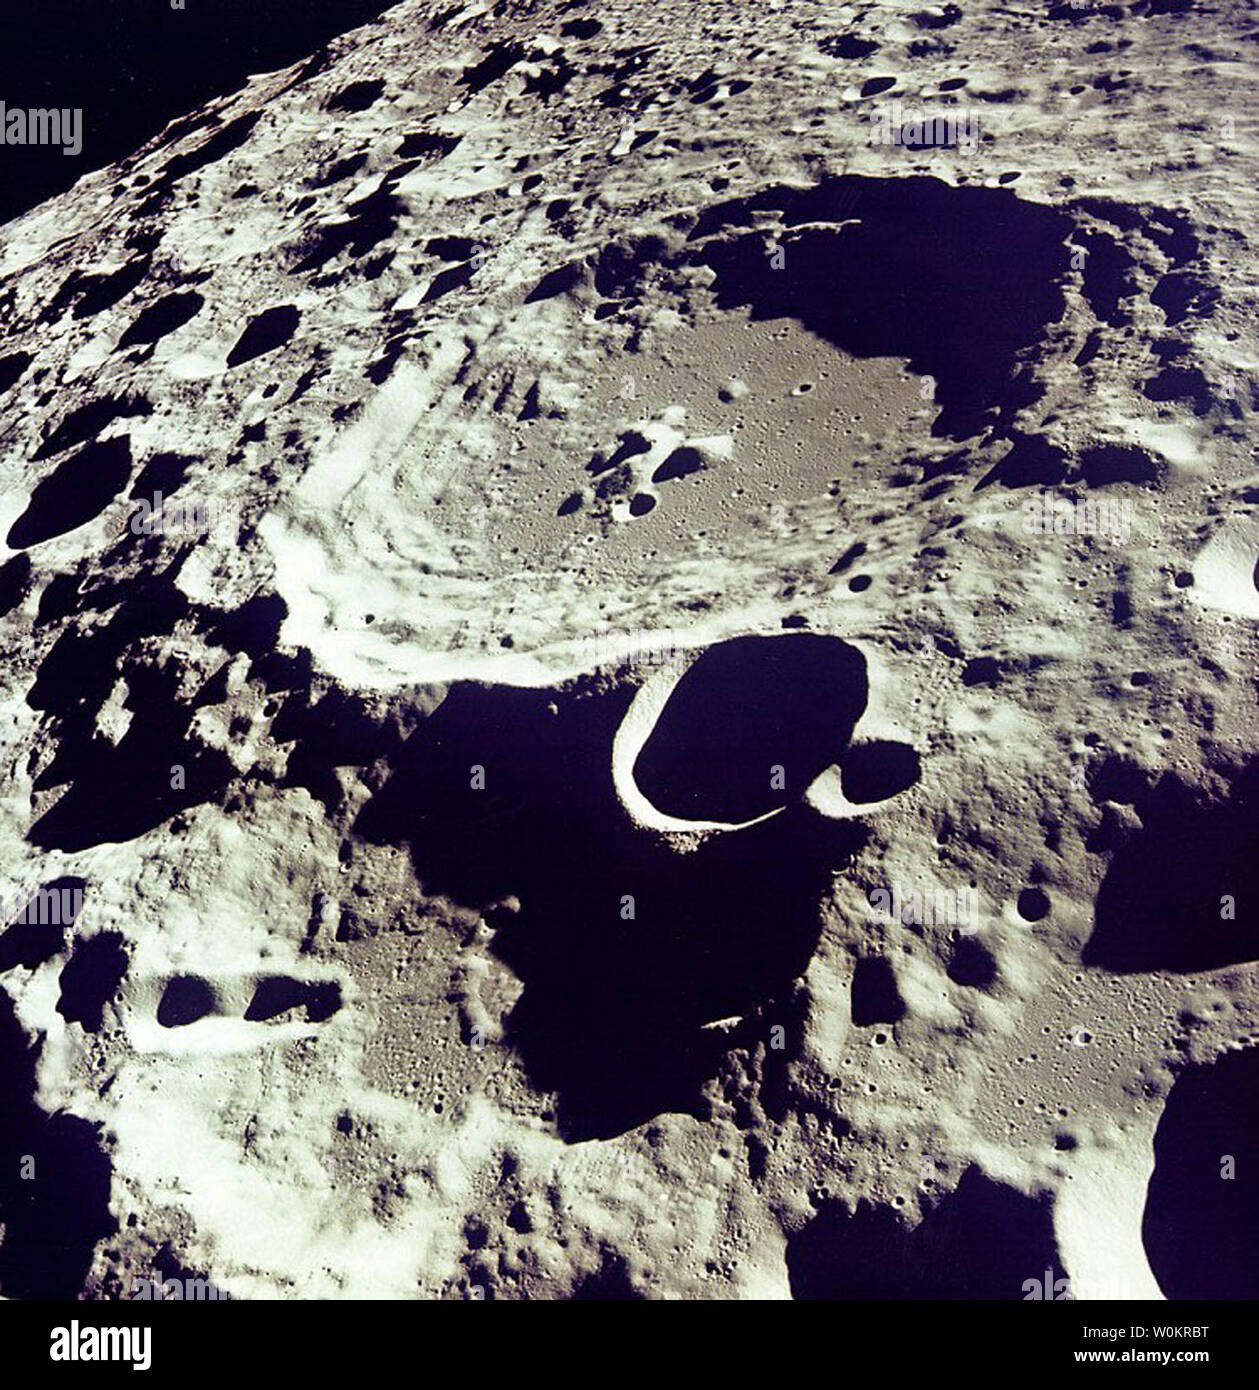 308 cratère se distingue en relief dans cette photo de l'orbite lunaire d'Apollo 11. Neil Armstrong est le premier homme sur la lune le 20 juillet 1969, il y a 35 ans. (Photo d'UPI/NASA) Banque D'Images